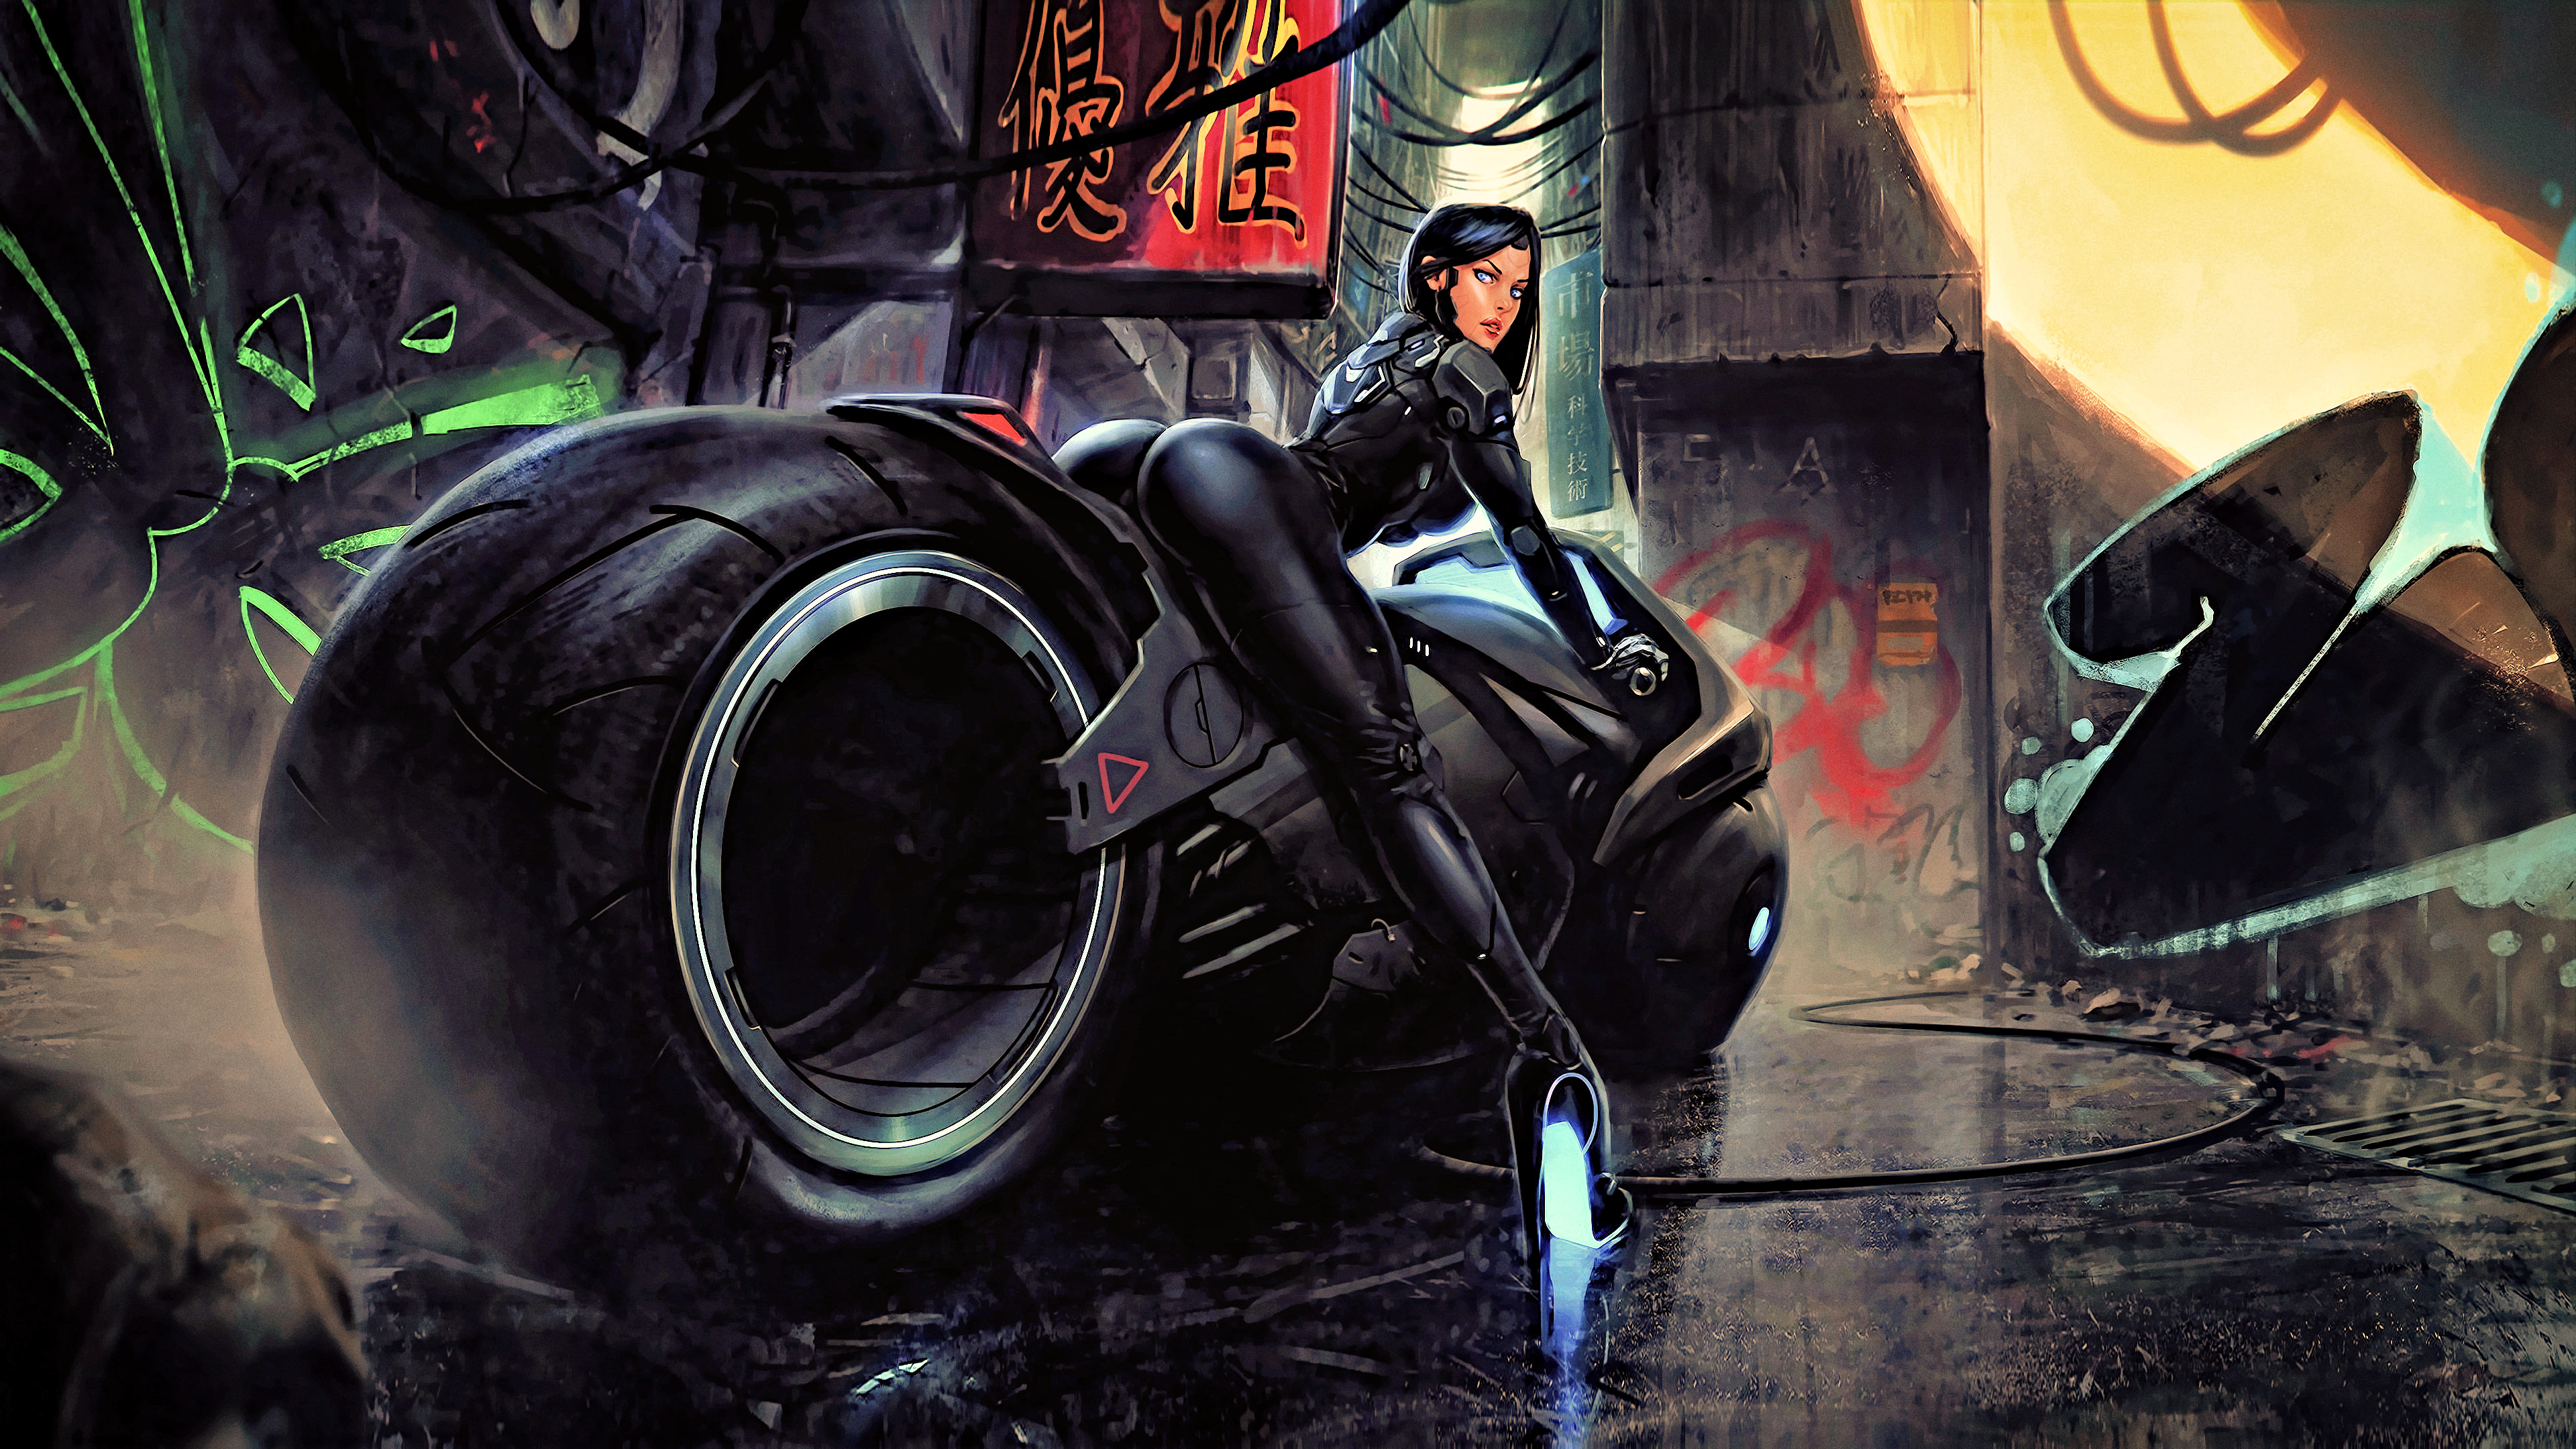 Cyberpunk motorcycle art фото 83